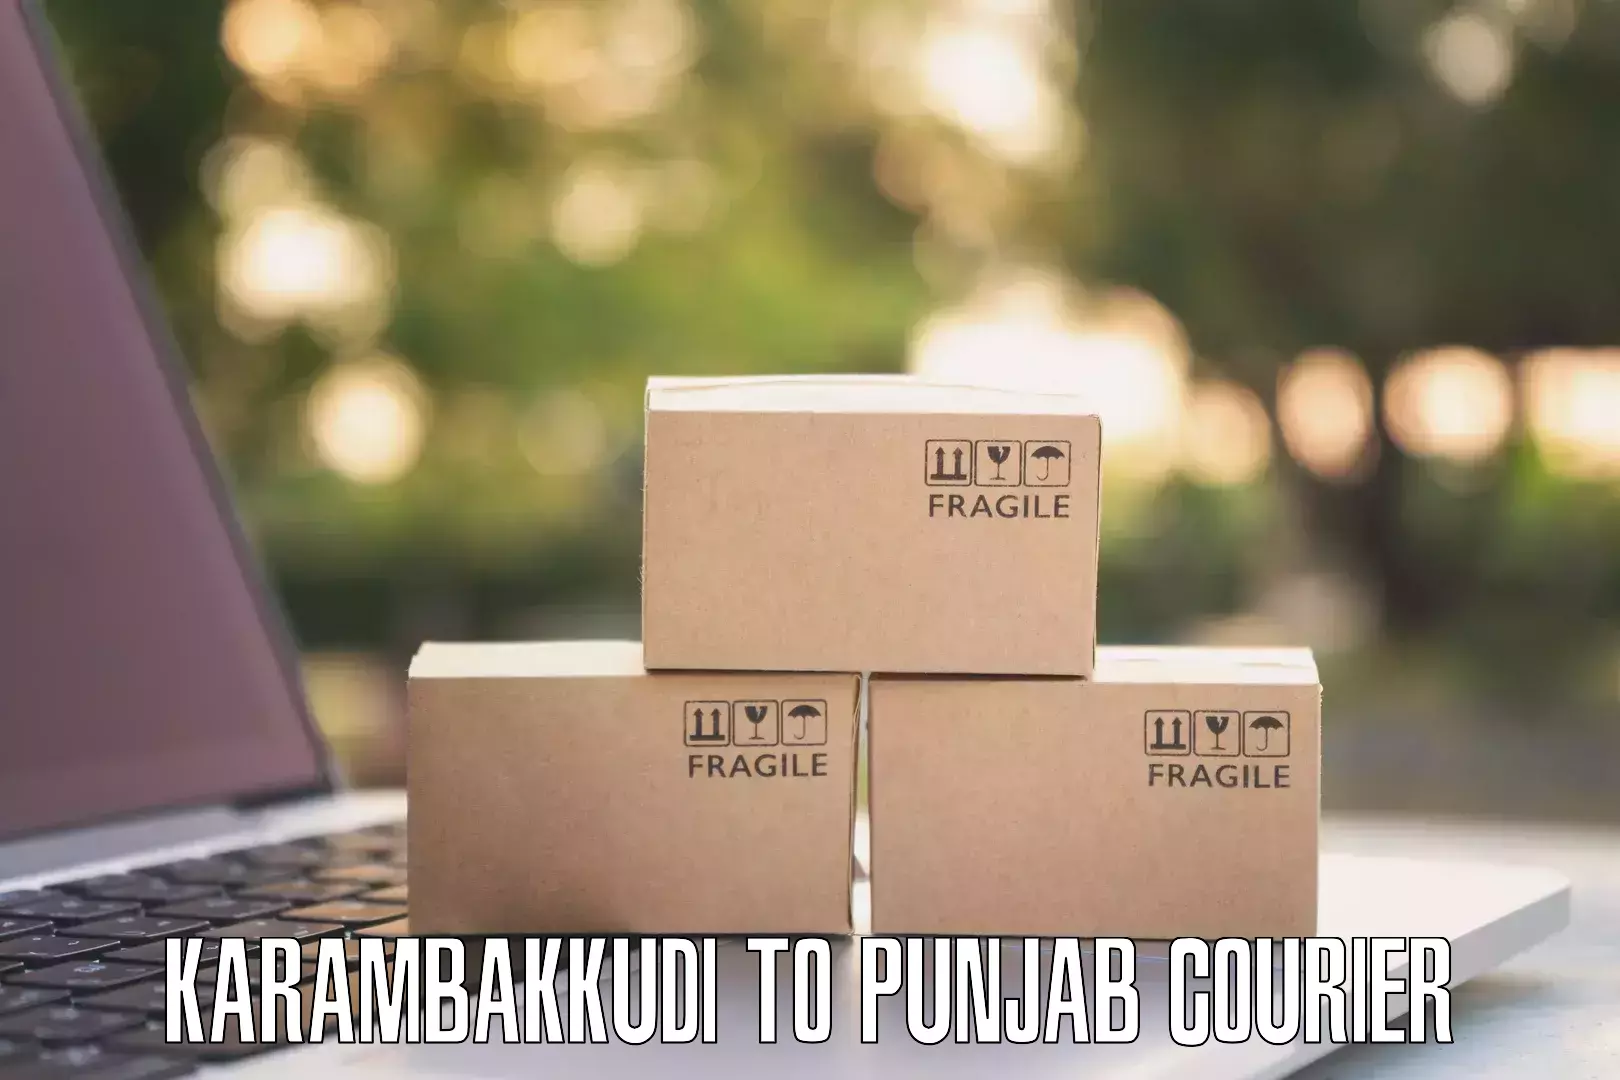 Global parcel delivery Karambakkudi to Malerkotla